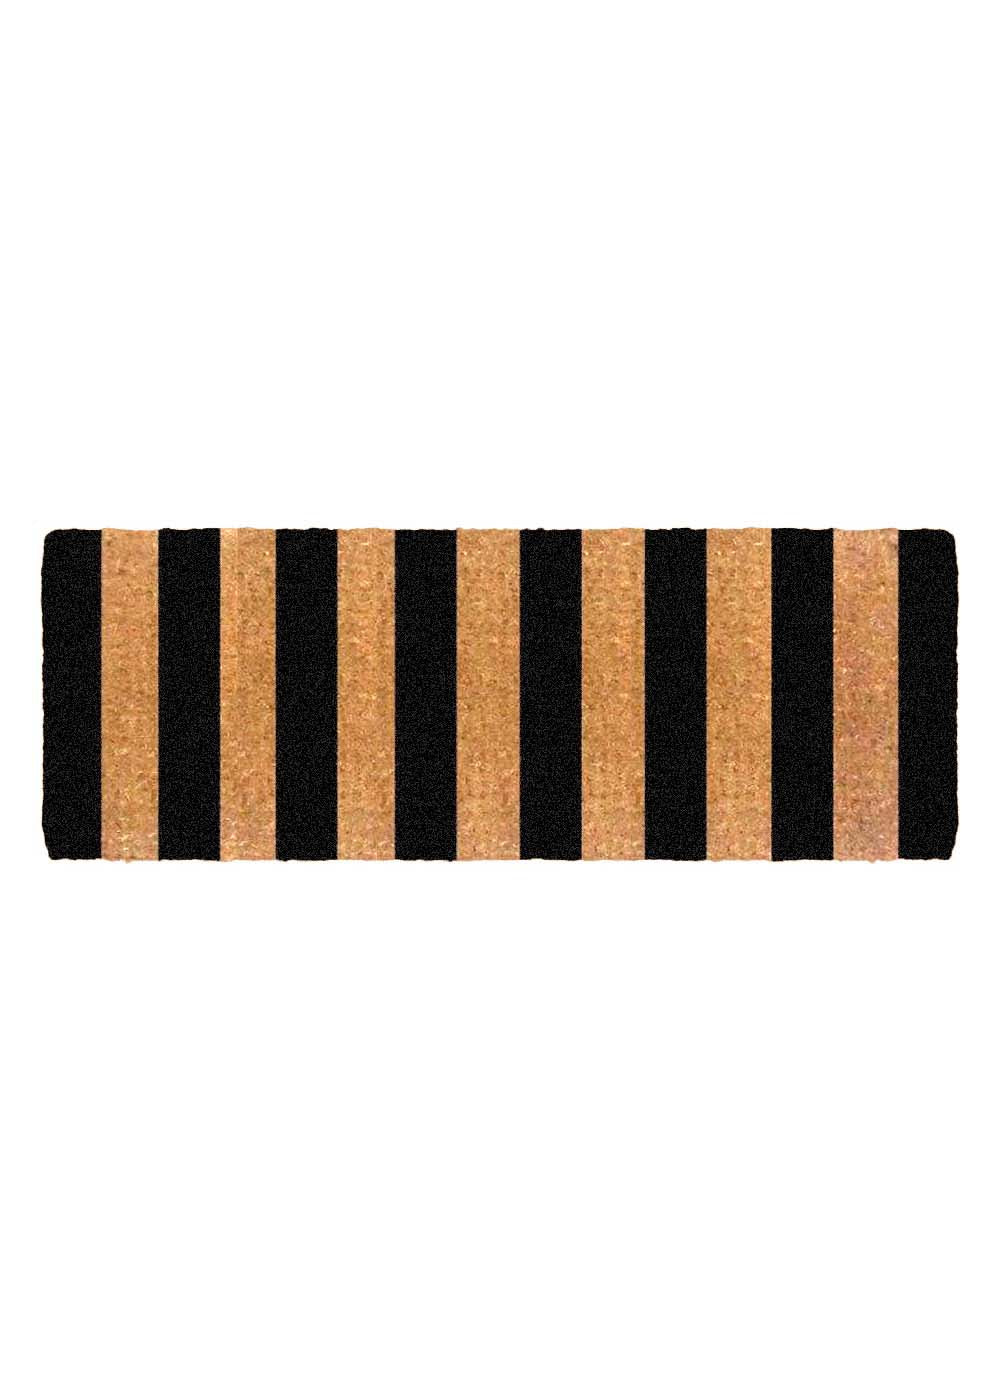 FM2 Premium Thick Coir Double Doormat - Black Stripes